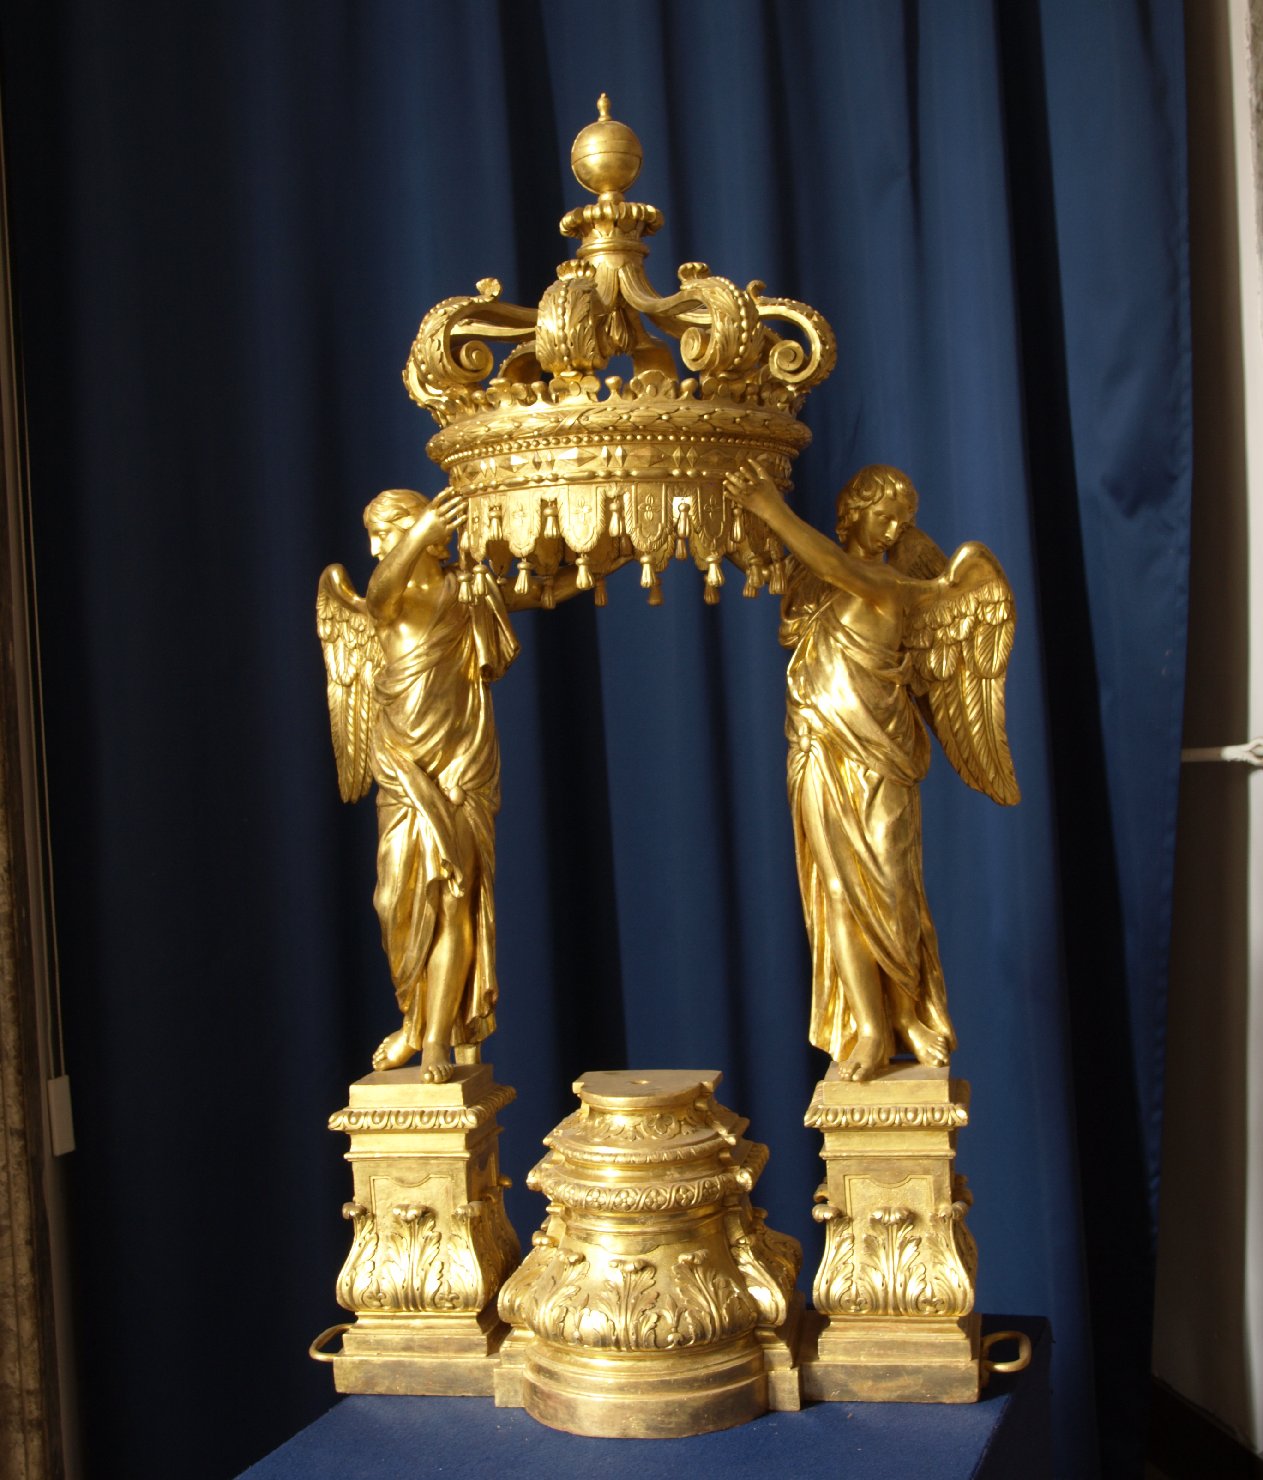 due angeli posti ai lati reggono la corona che funge da copertura del tempietto (tabernacolo portatile - a tempietto) - ambito campano (sec. XVIII)